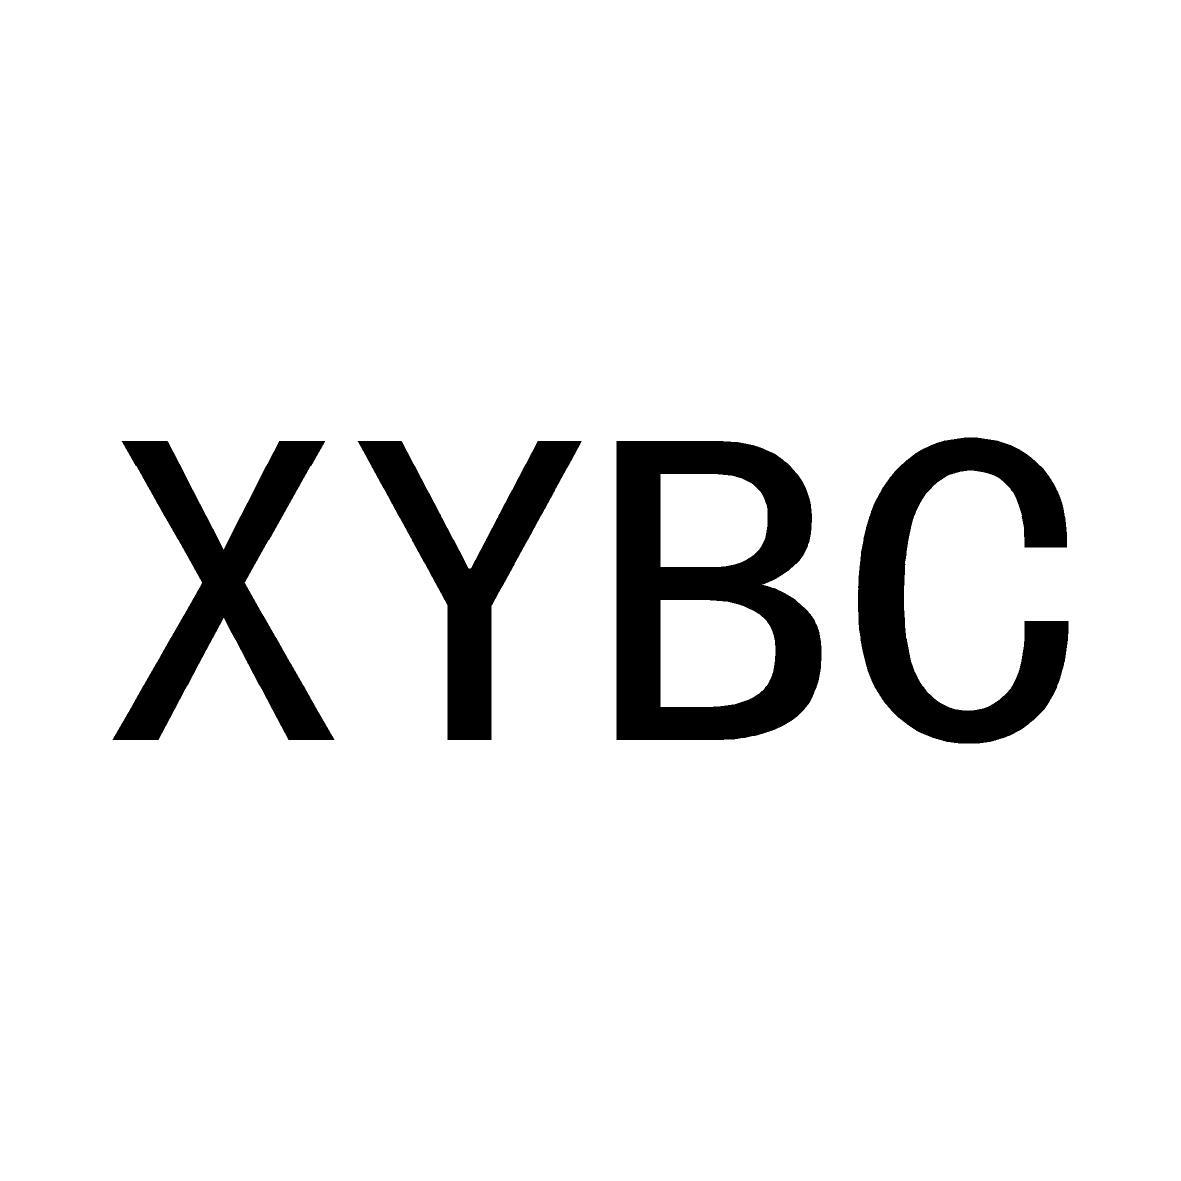 XYBC